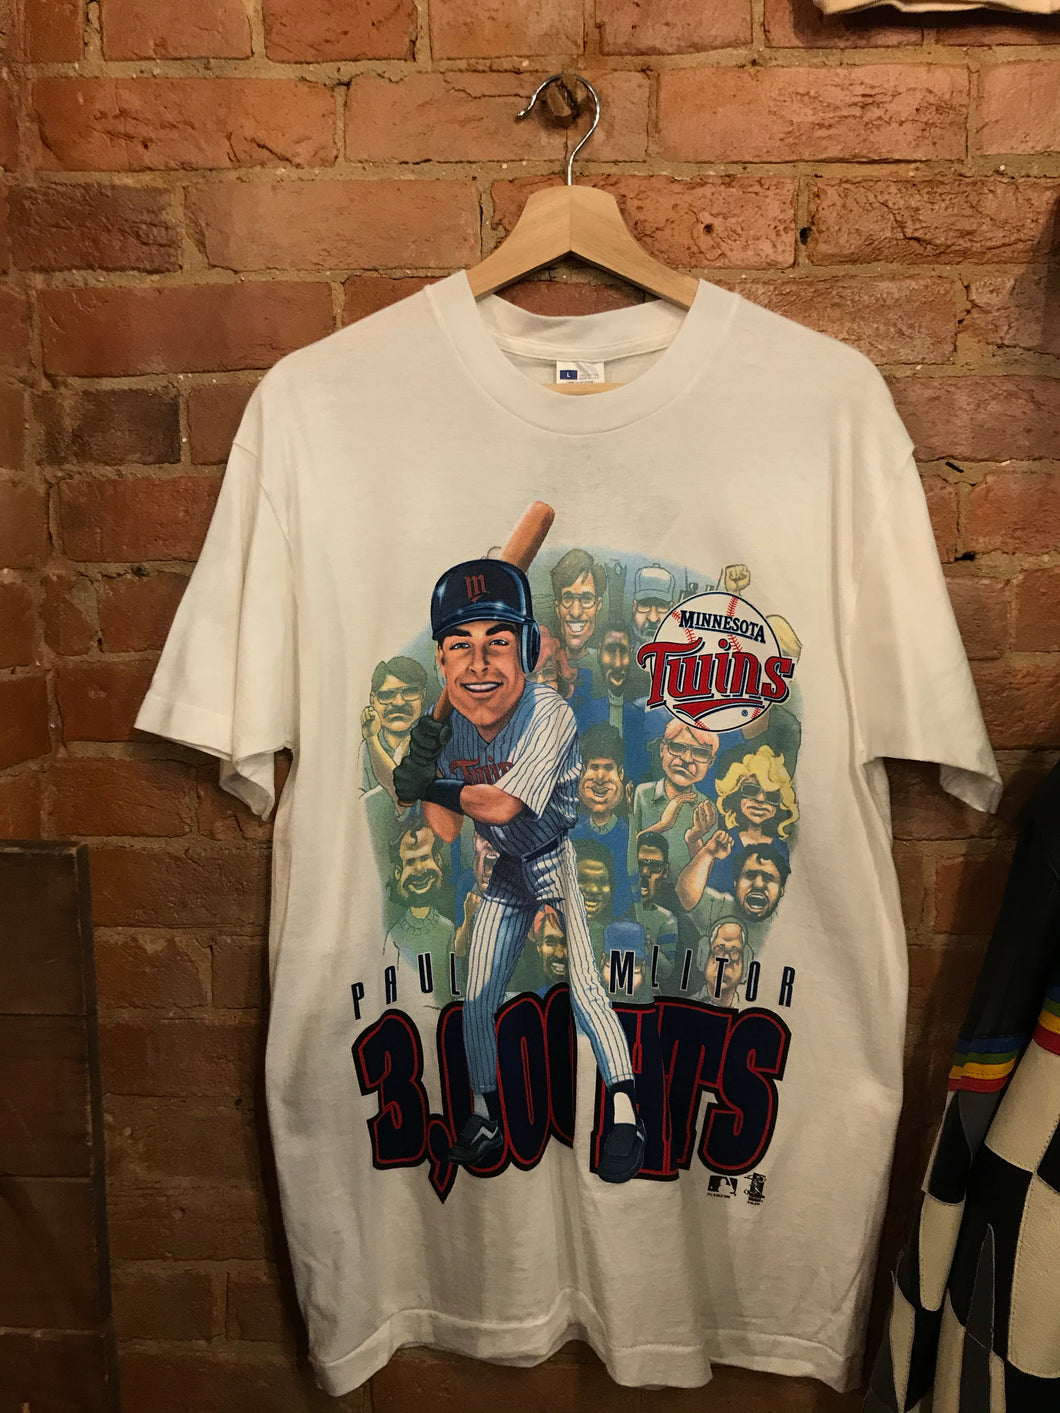 Paul Molitor 3,000 Hits T-shirt: L